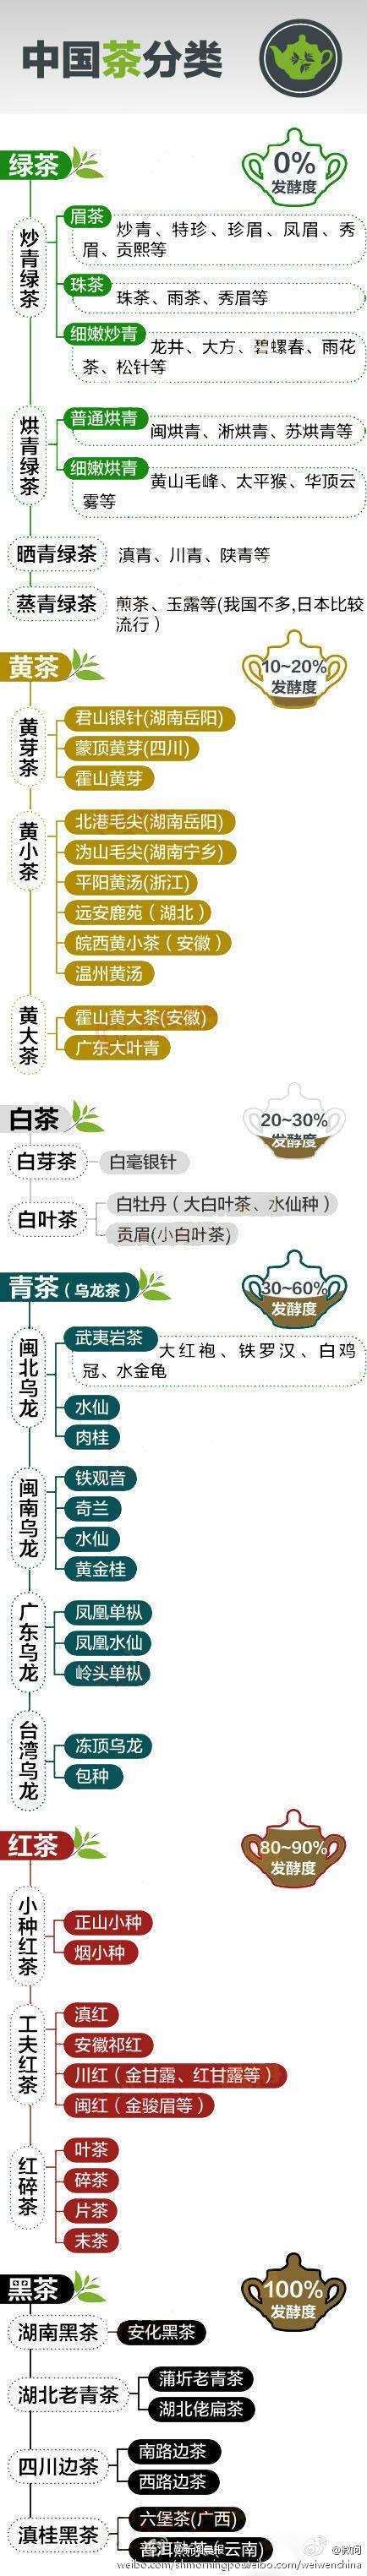 中国的茶叶种类有很多比如红茶绿茶等用了什么说明方法